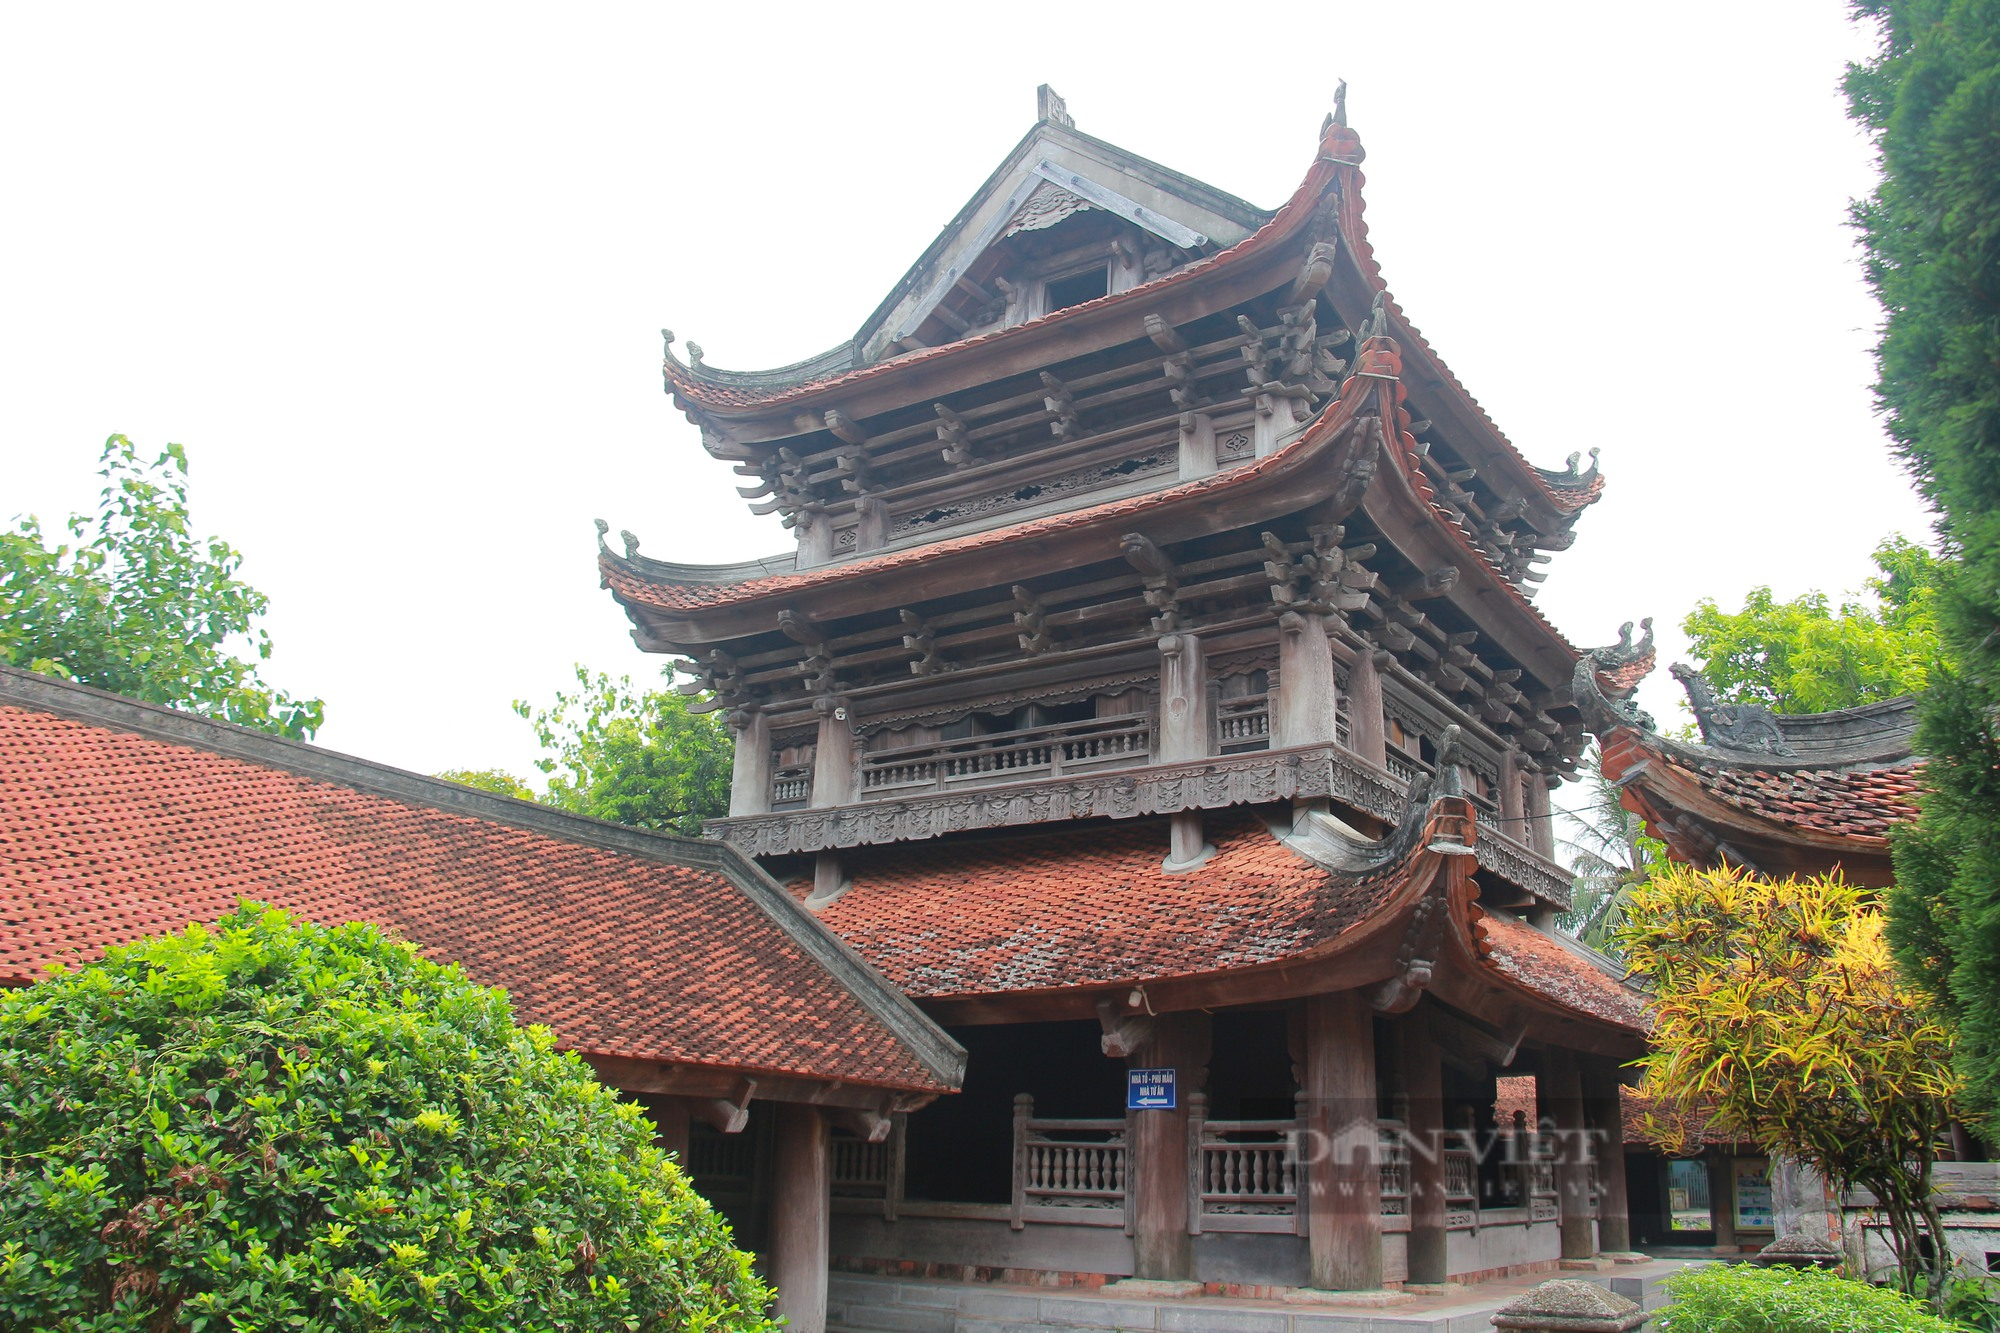 Chùa Keo ở Thái Bình (Bài 2): Gác chuông gỗ có hình dáng bông hoa sen, cao nhất ở Việt Nam - Ảnh 2.